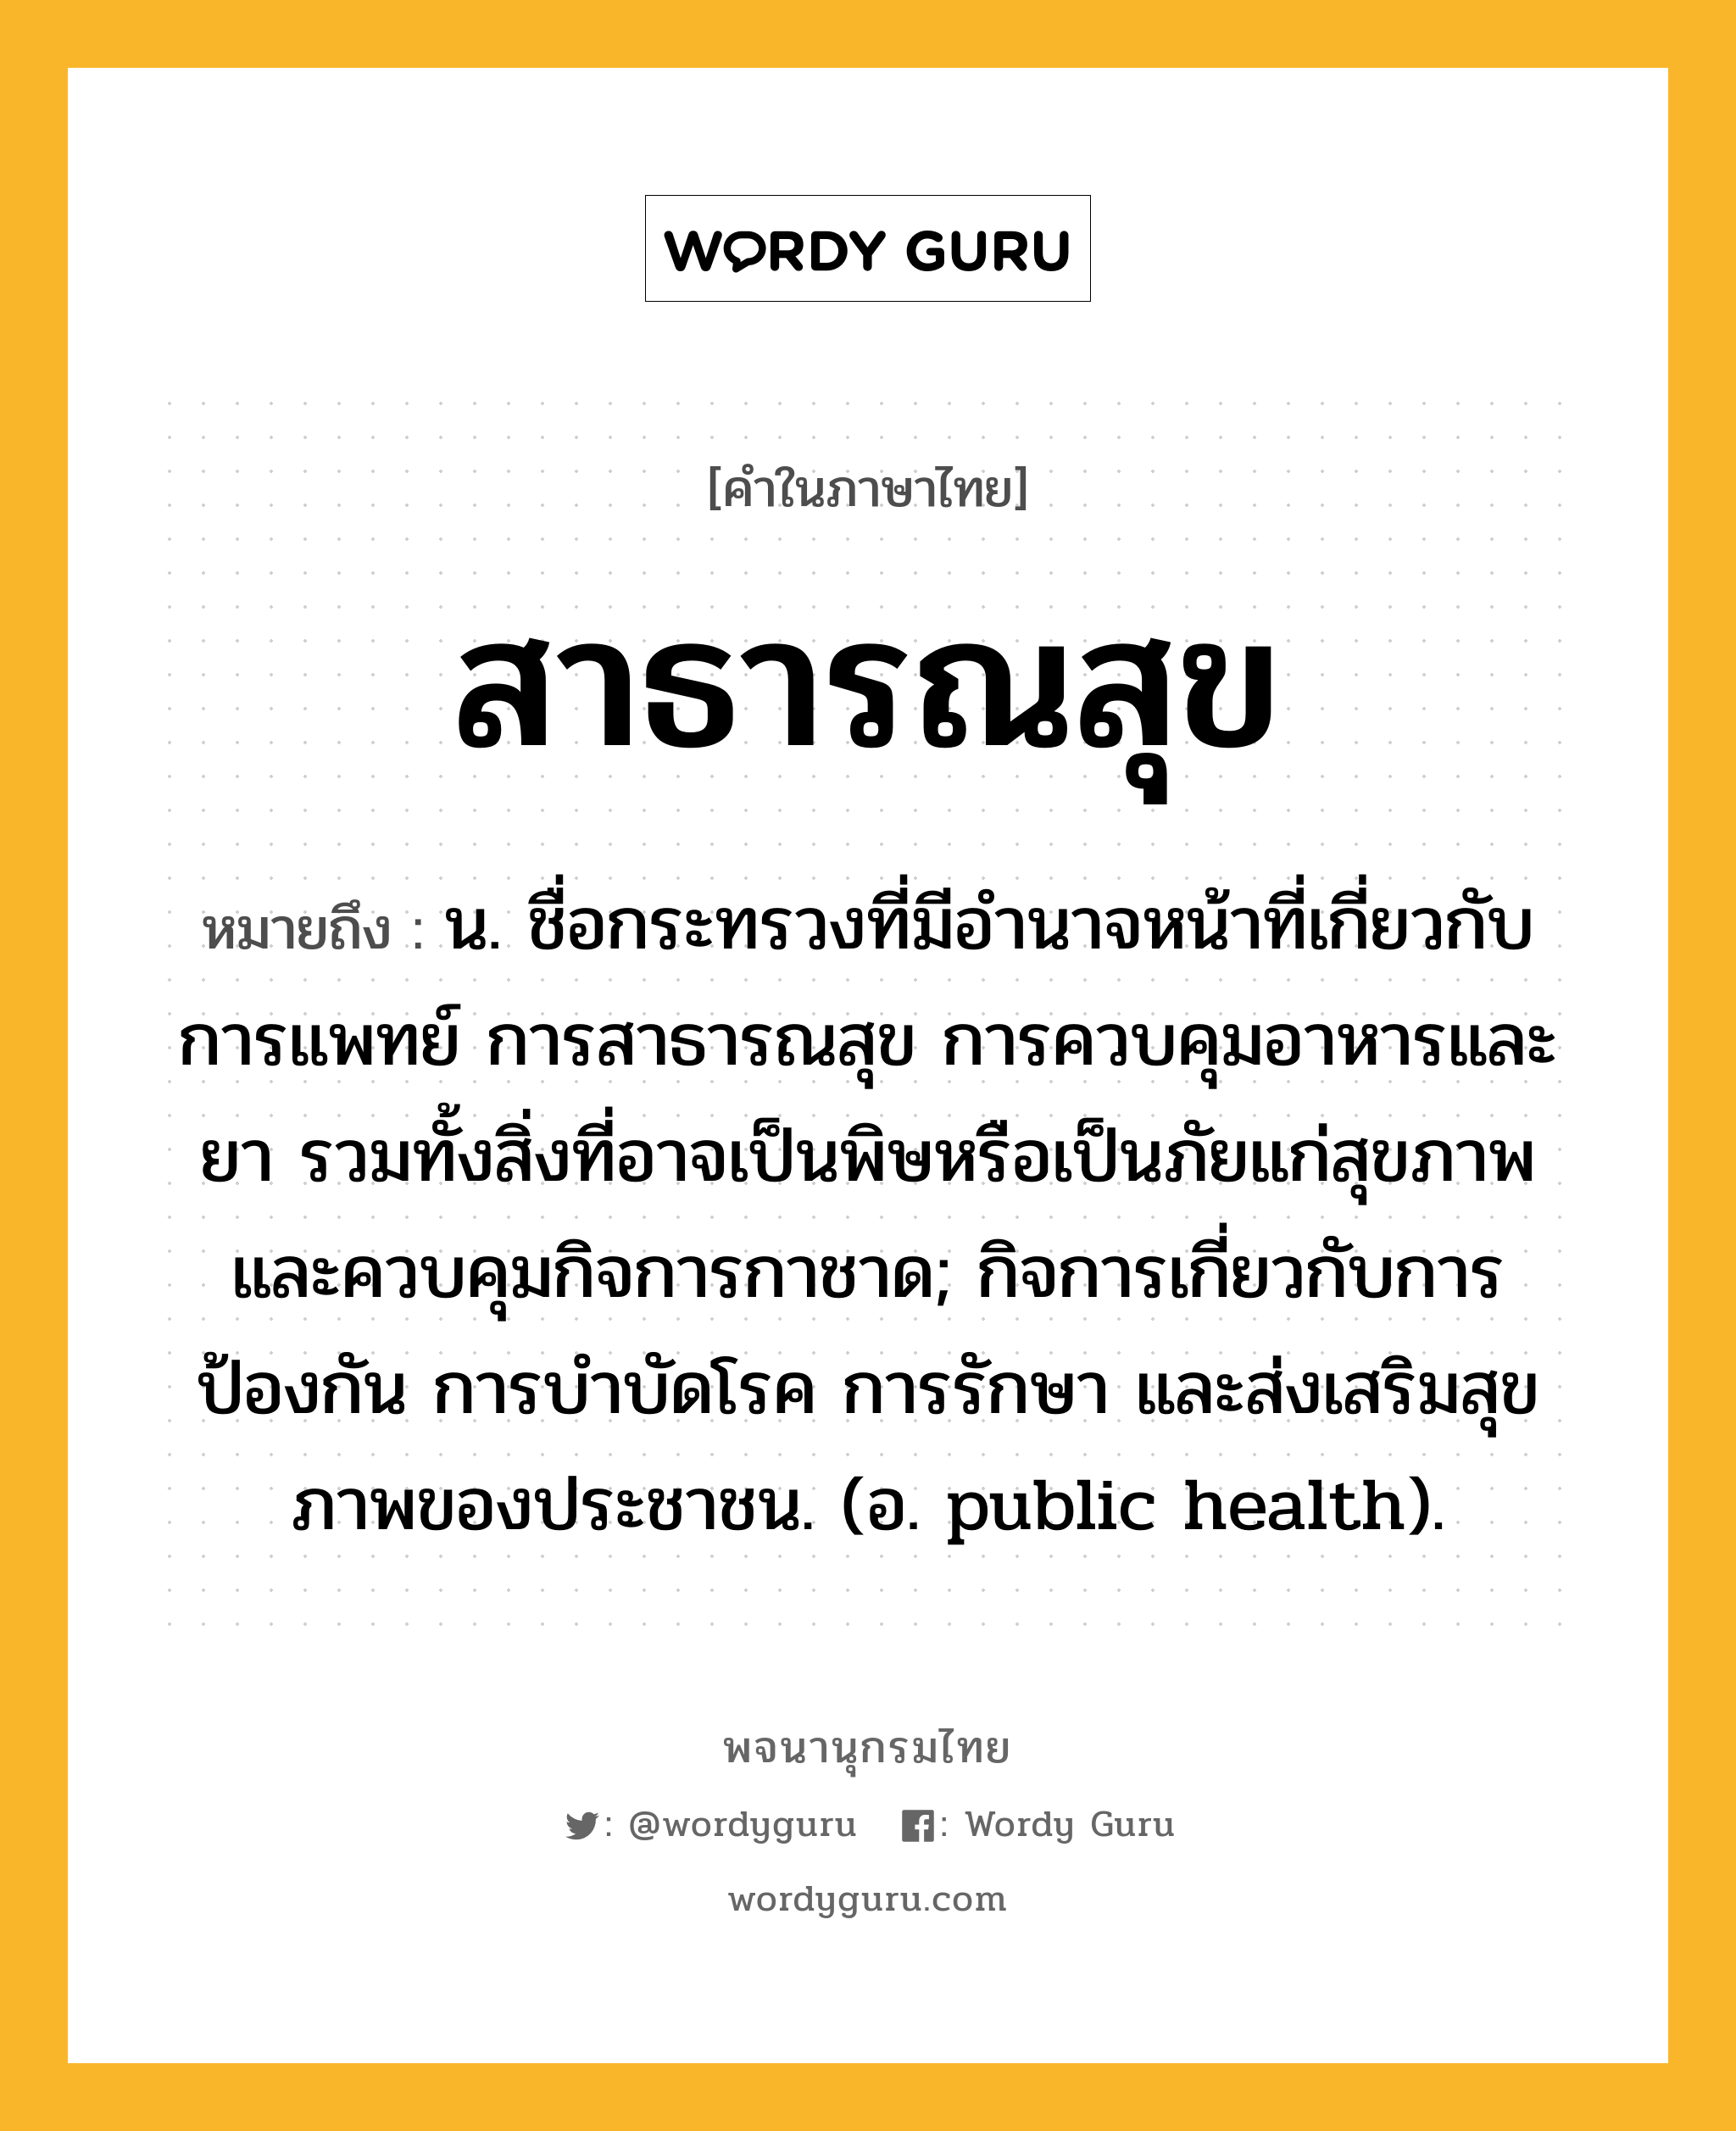 สาธารณสุข ความหมาย หมายถึงอะไร?, คำในภาษาไทย สาธารณสุข หมายถึง น. ชื่อกระทรวงที่มีอํานาจหน้าที่เกี่ยวกับการแพทย์ การสาธารณสุข การควบคุมอาหารและยา รวมทั้งสิ่งที่อาจเป็นพิษหรือเป็นภัยแก่สุขภาพ และควบคุมกิจการกาชาด; กิจการเกี่ยวกับการป้องกัน การบําบัดโรค การรักษา และส่งเสริมสุขภาพของประชาชน. (อ. public health).